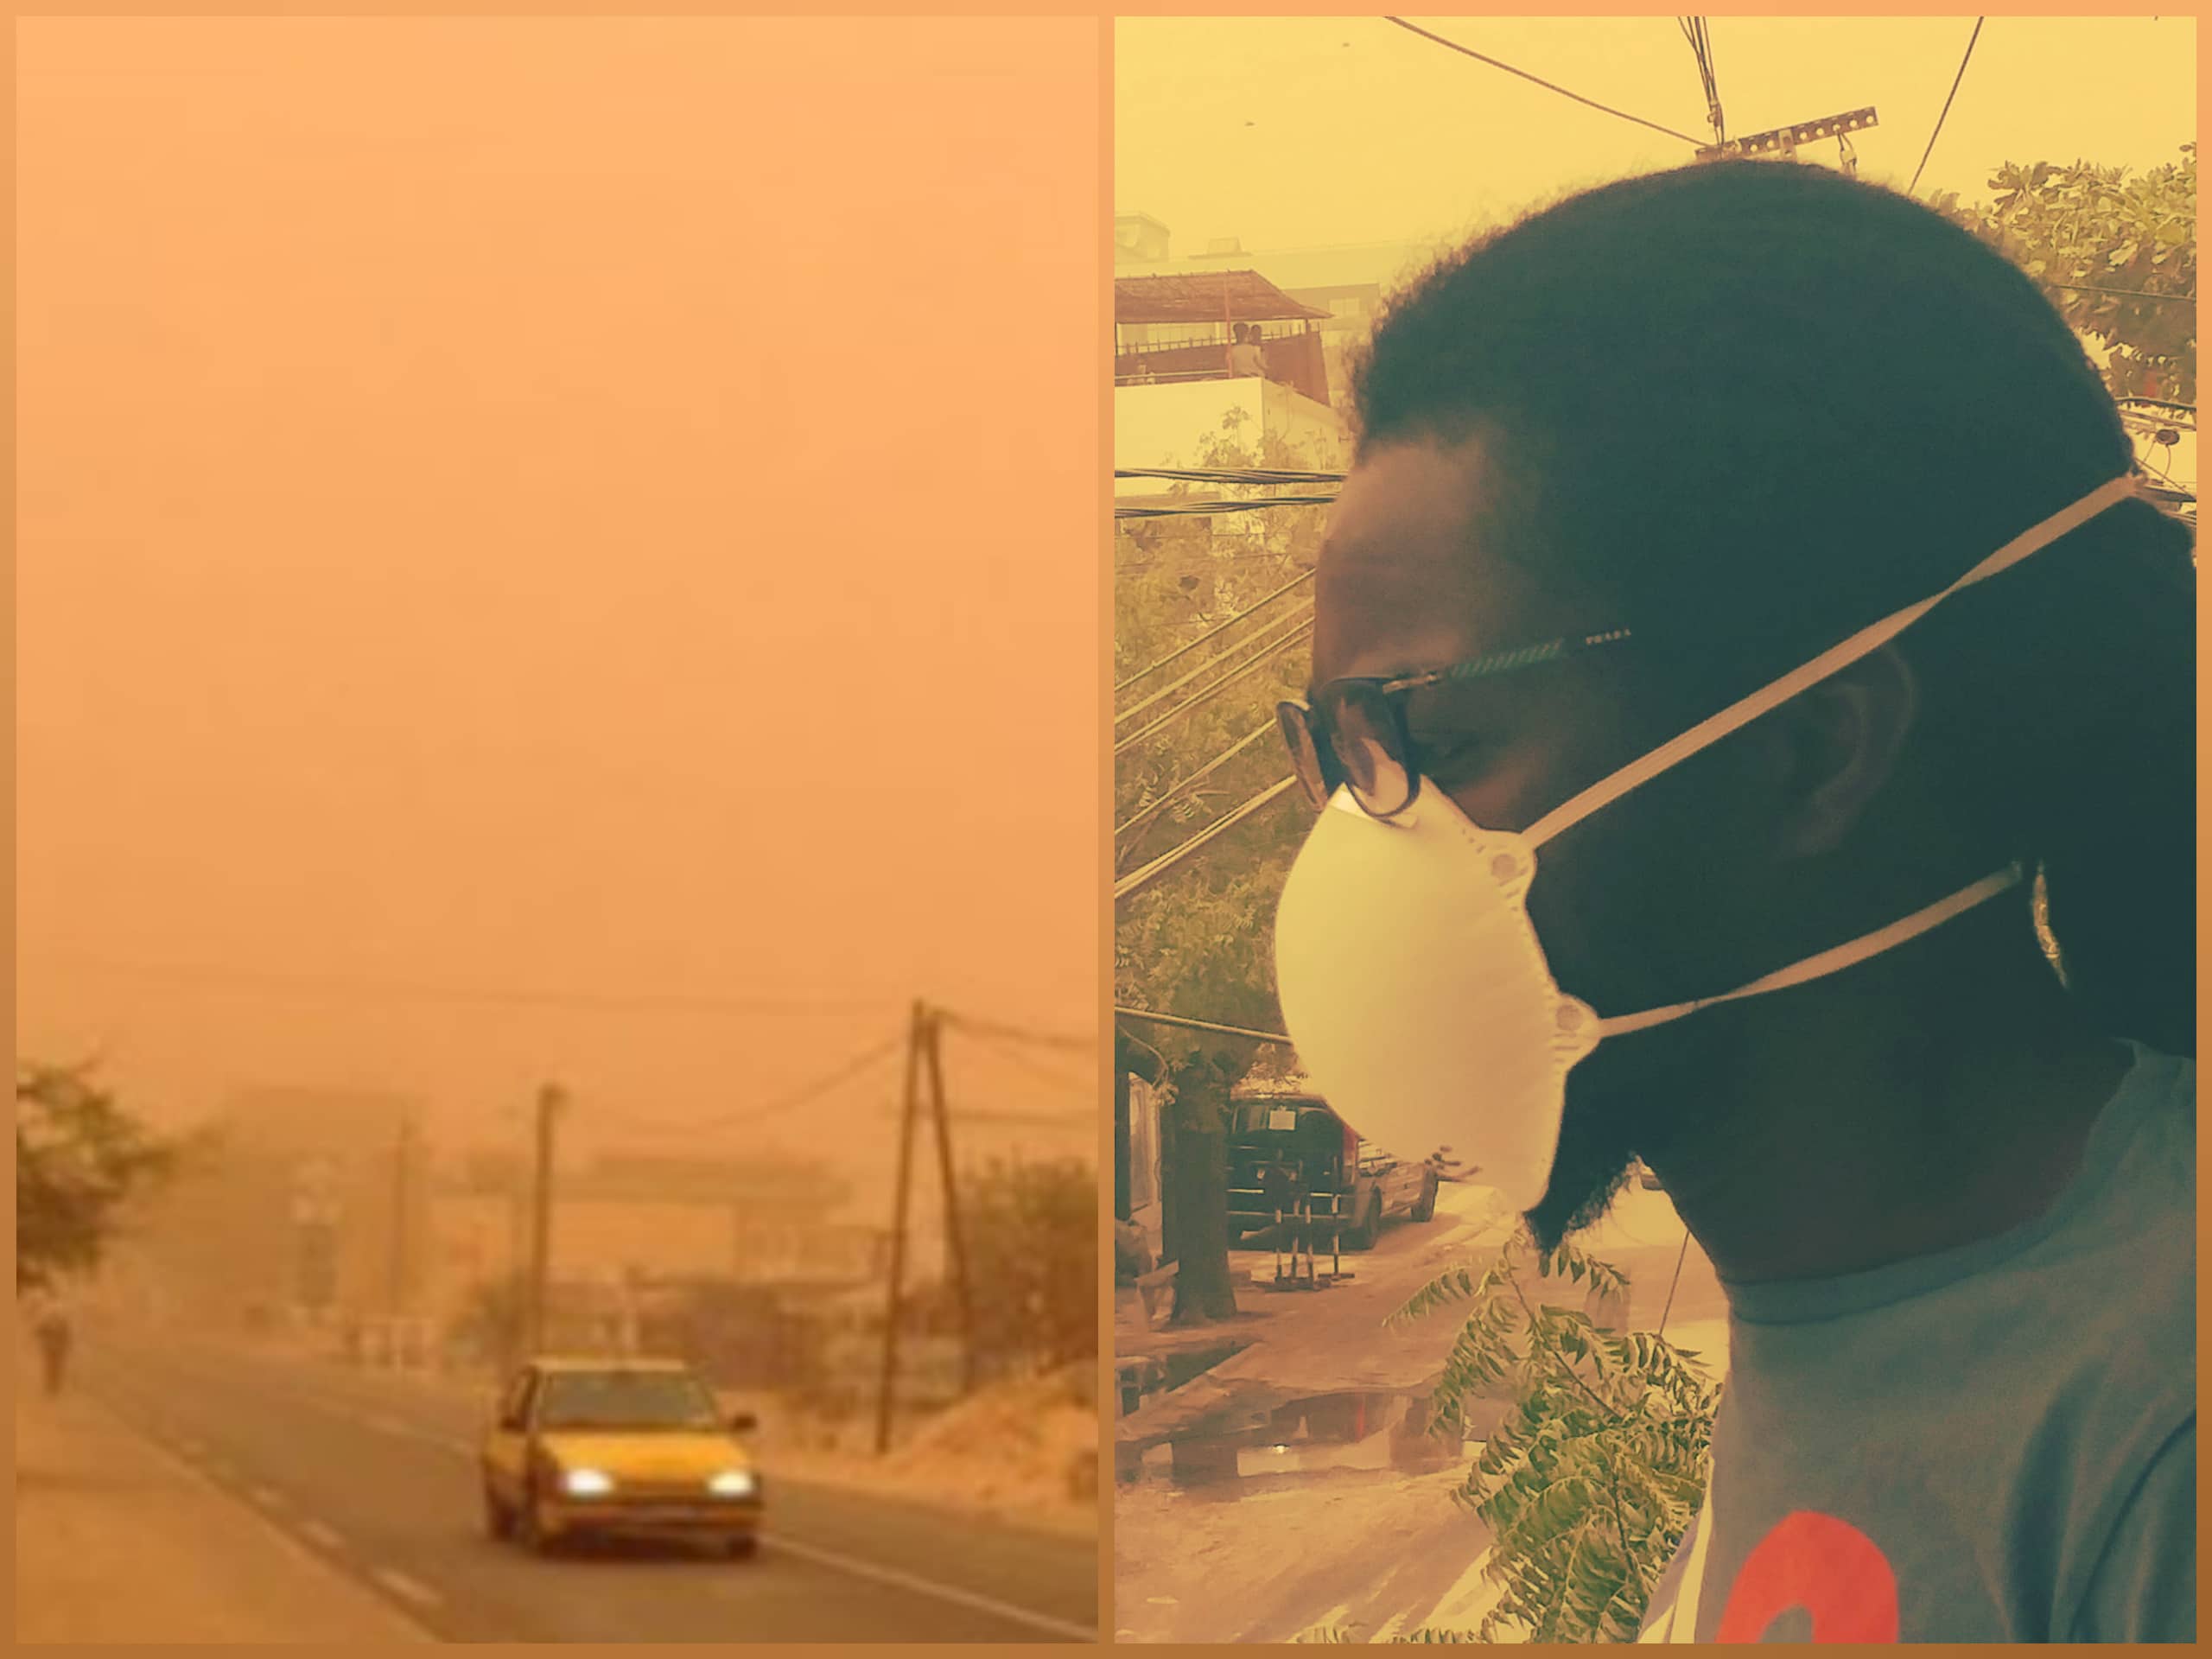 Mauvaise qualité de l’air : les ambulants haussent les prix des masques